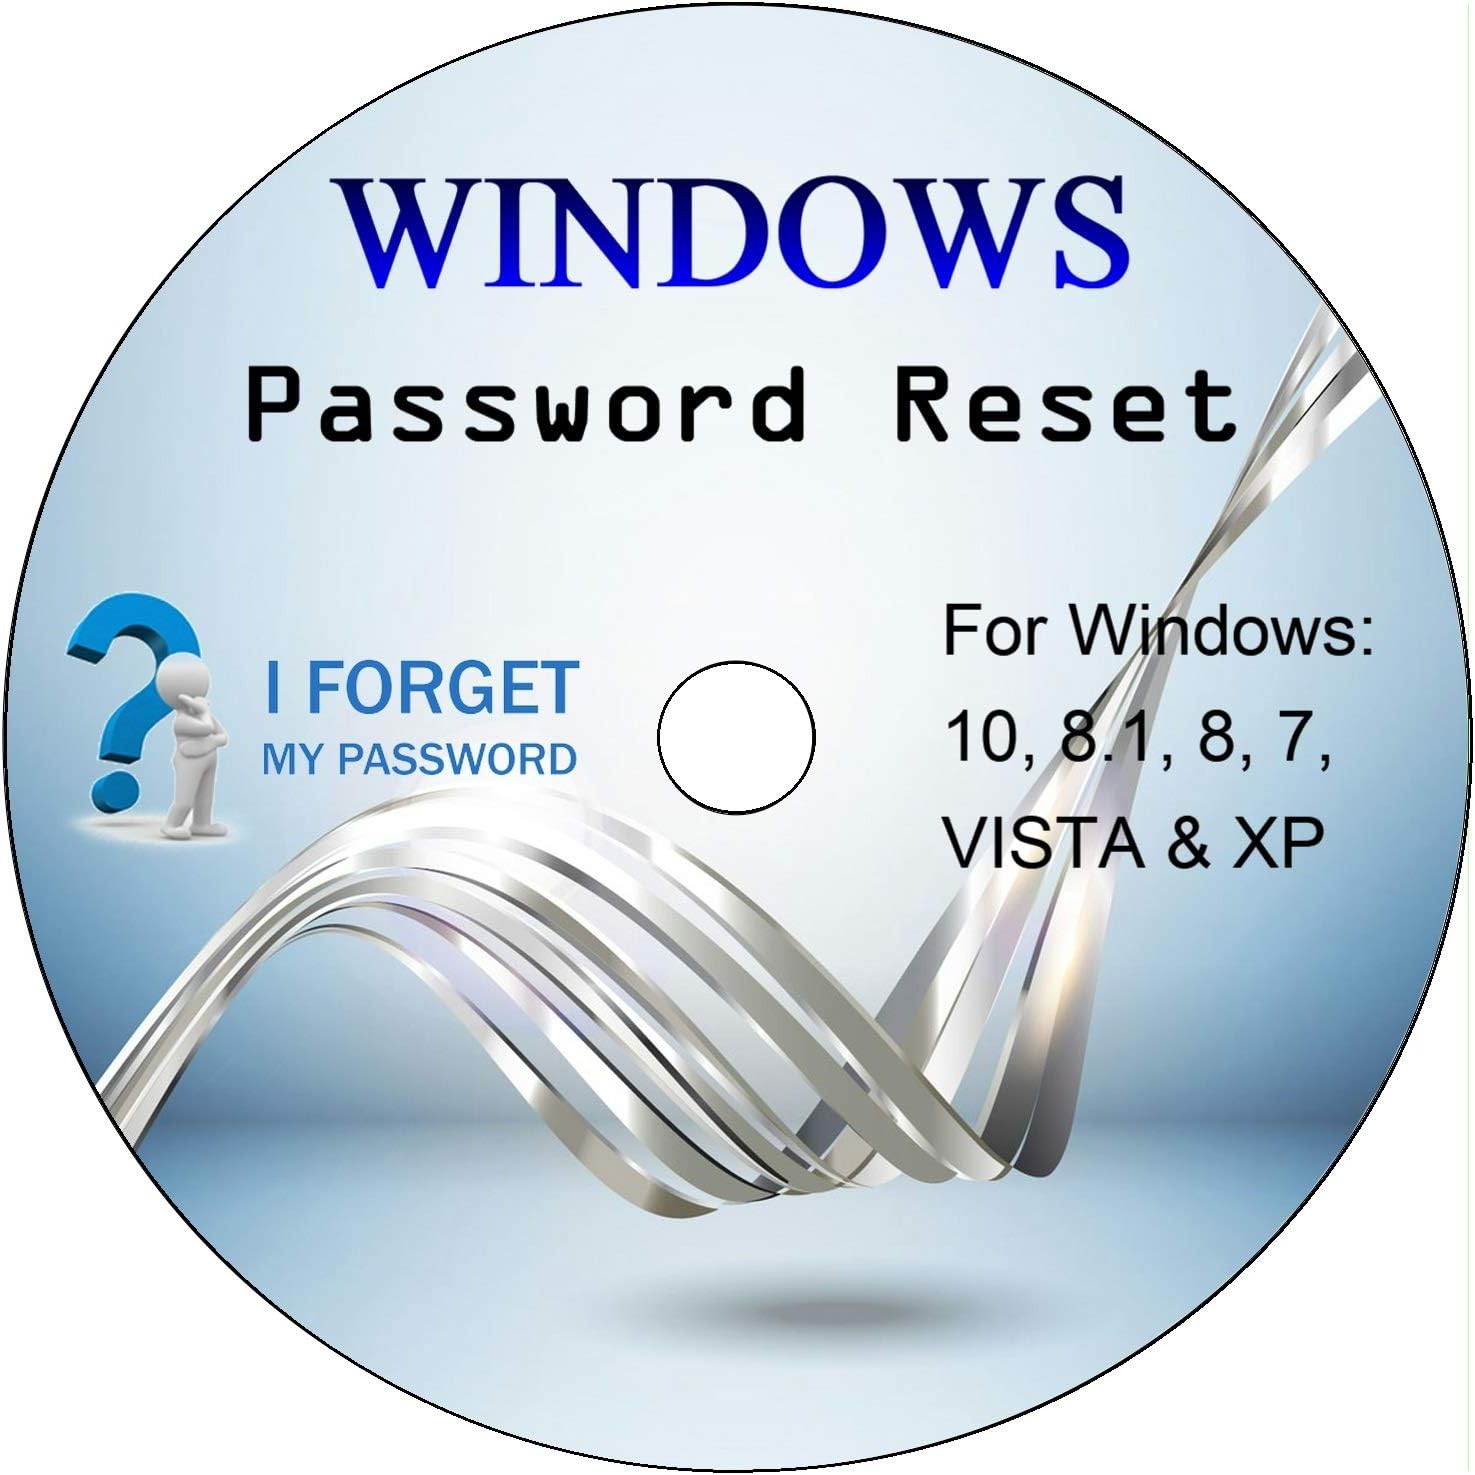 Windows password reset disk